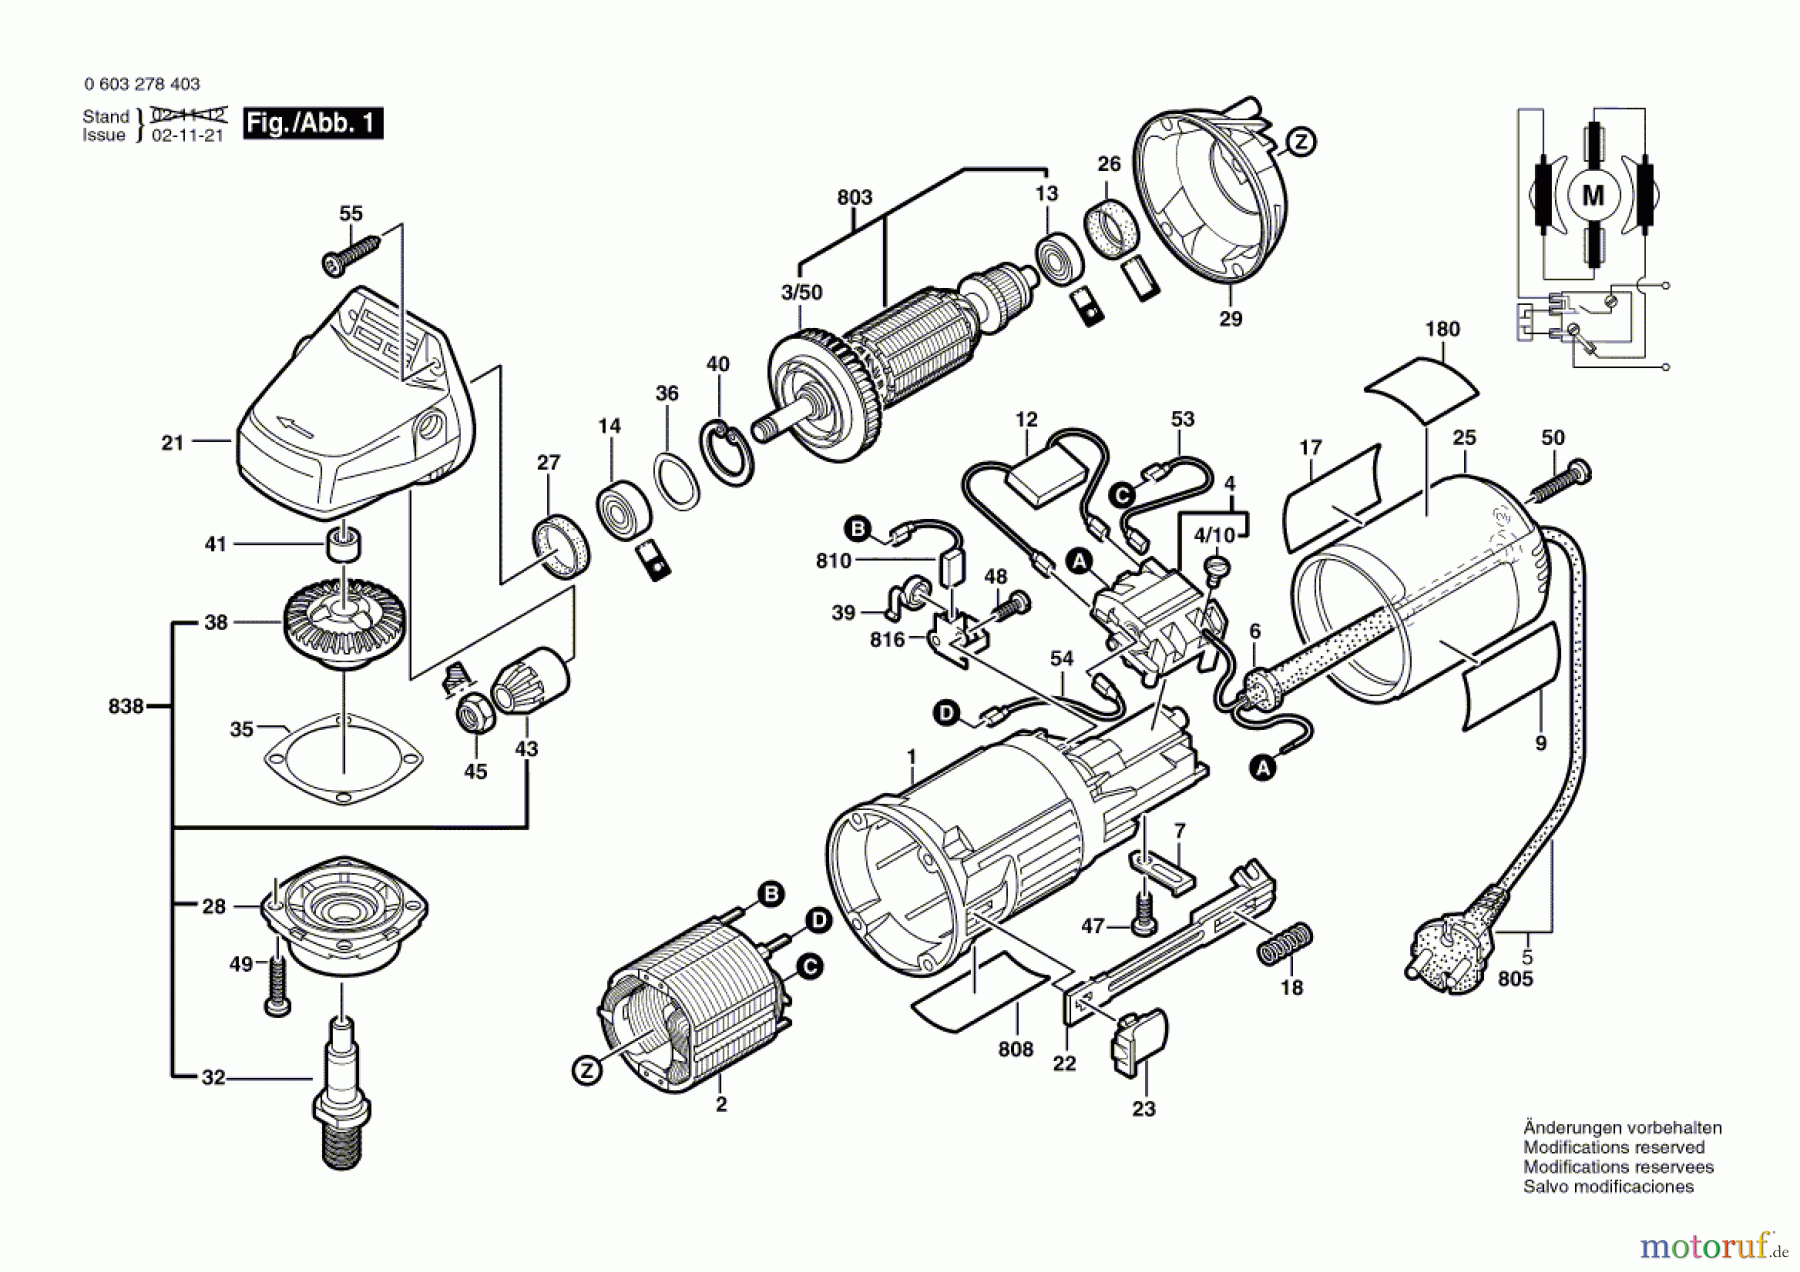  Bosch Werkzeug Winkelschleifer PWS 6-115 Seite 1